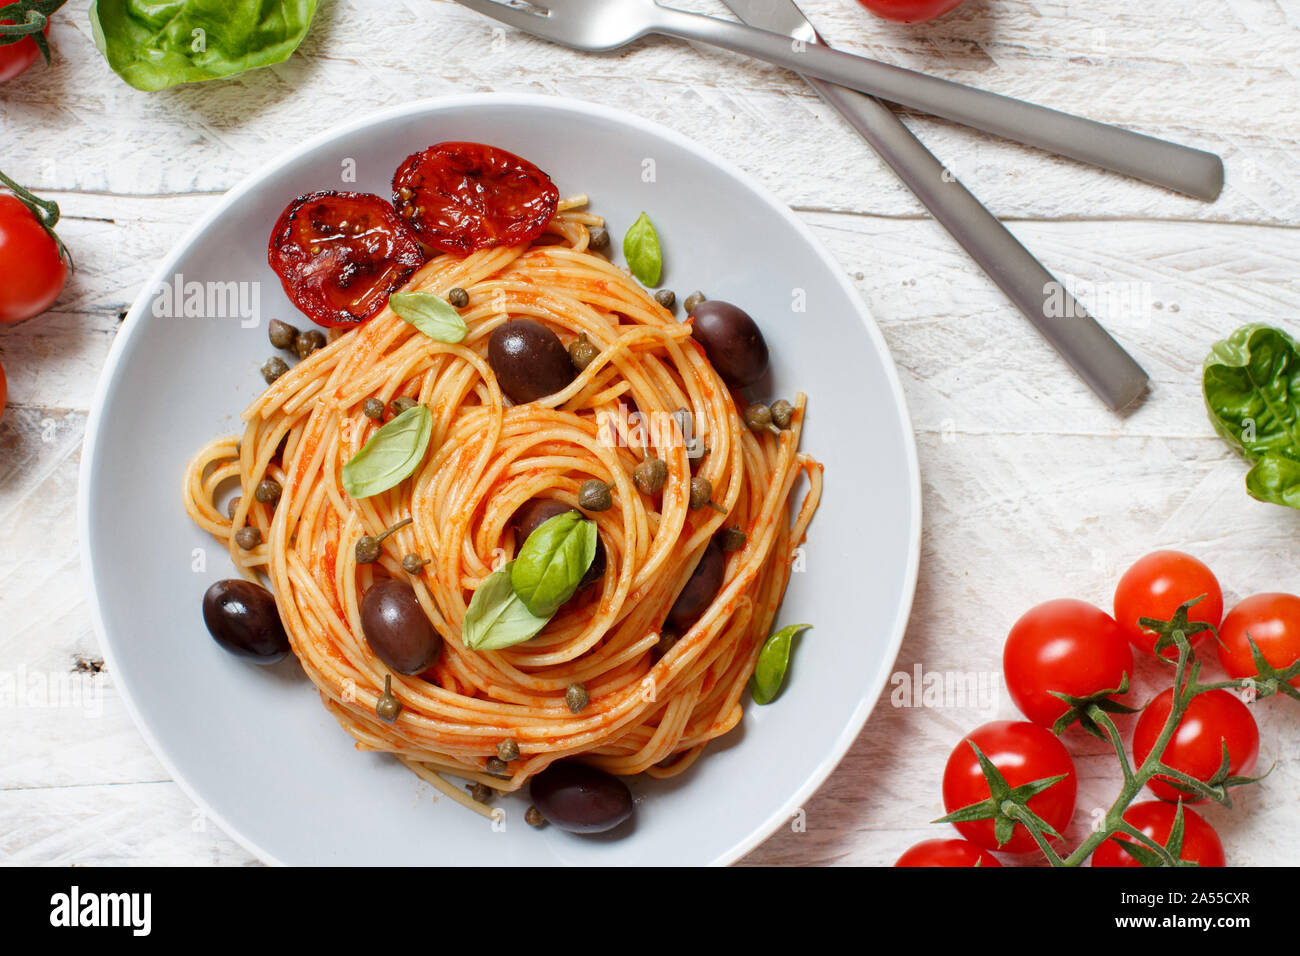 Pasta alla puttanesca - Spaghetti mit Tomatensauce Oliven und Kapern Stockfoto